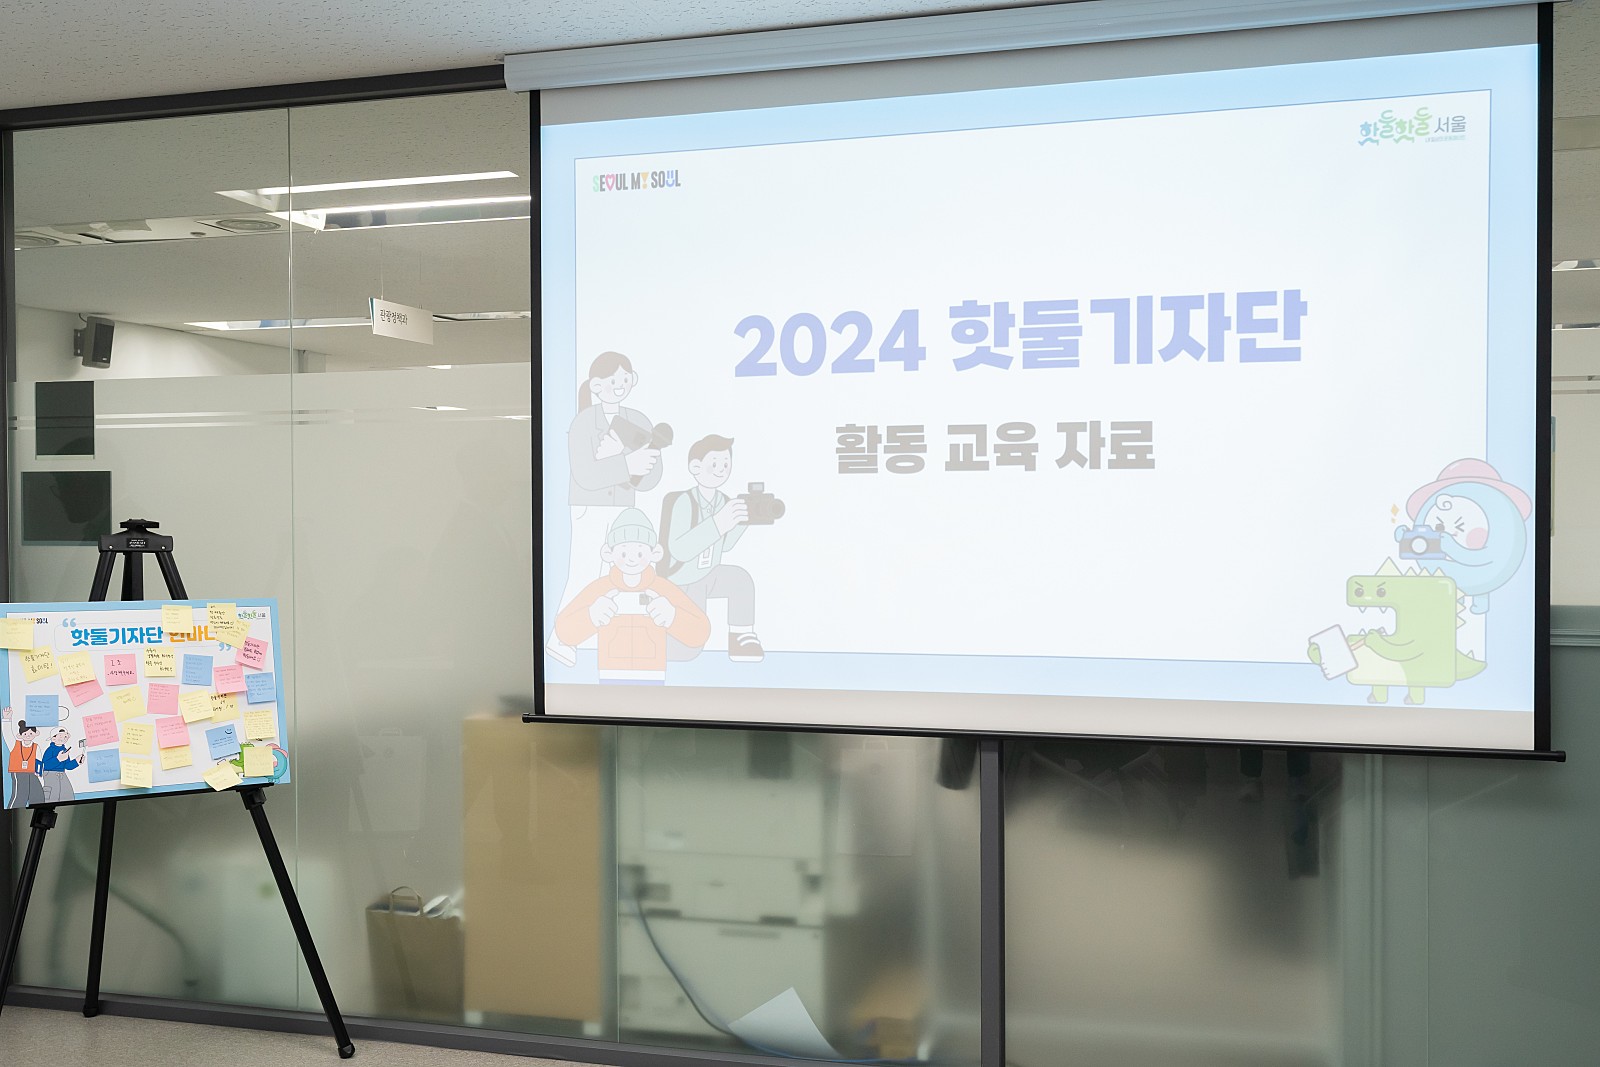 핫둘기자단은 서울 내 다양한 생활체육 행사와 체육 상식을 취재하고
기사나 카드 뉴스, 영상 등의 다양한 형태로 생생하게 전달하는 서울시의 생활체육 기자단입니다.
